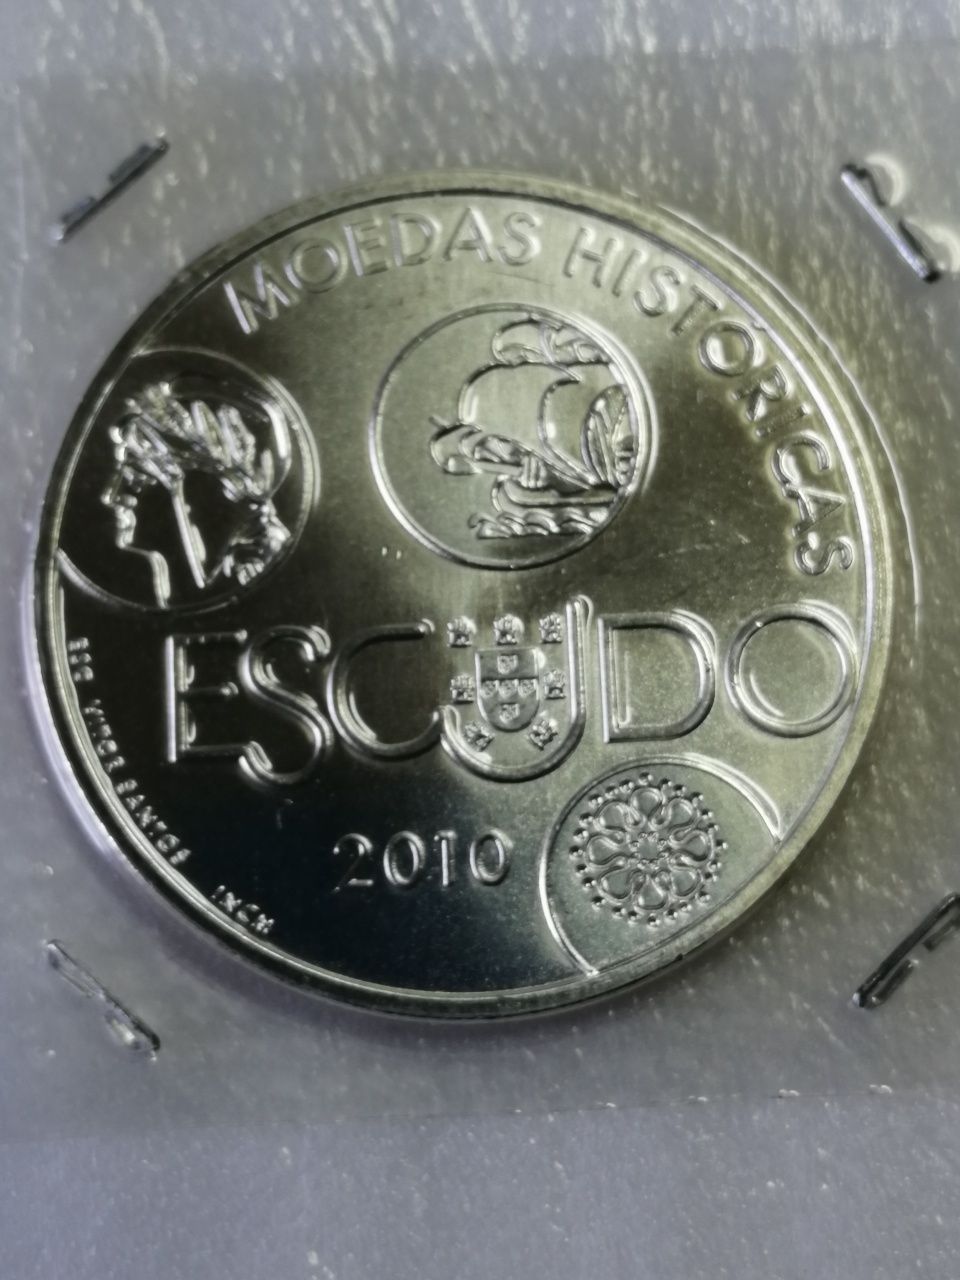 Moedas comemorativas e 2 euros Portugal